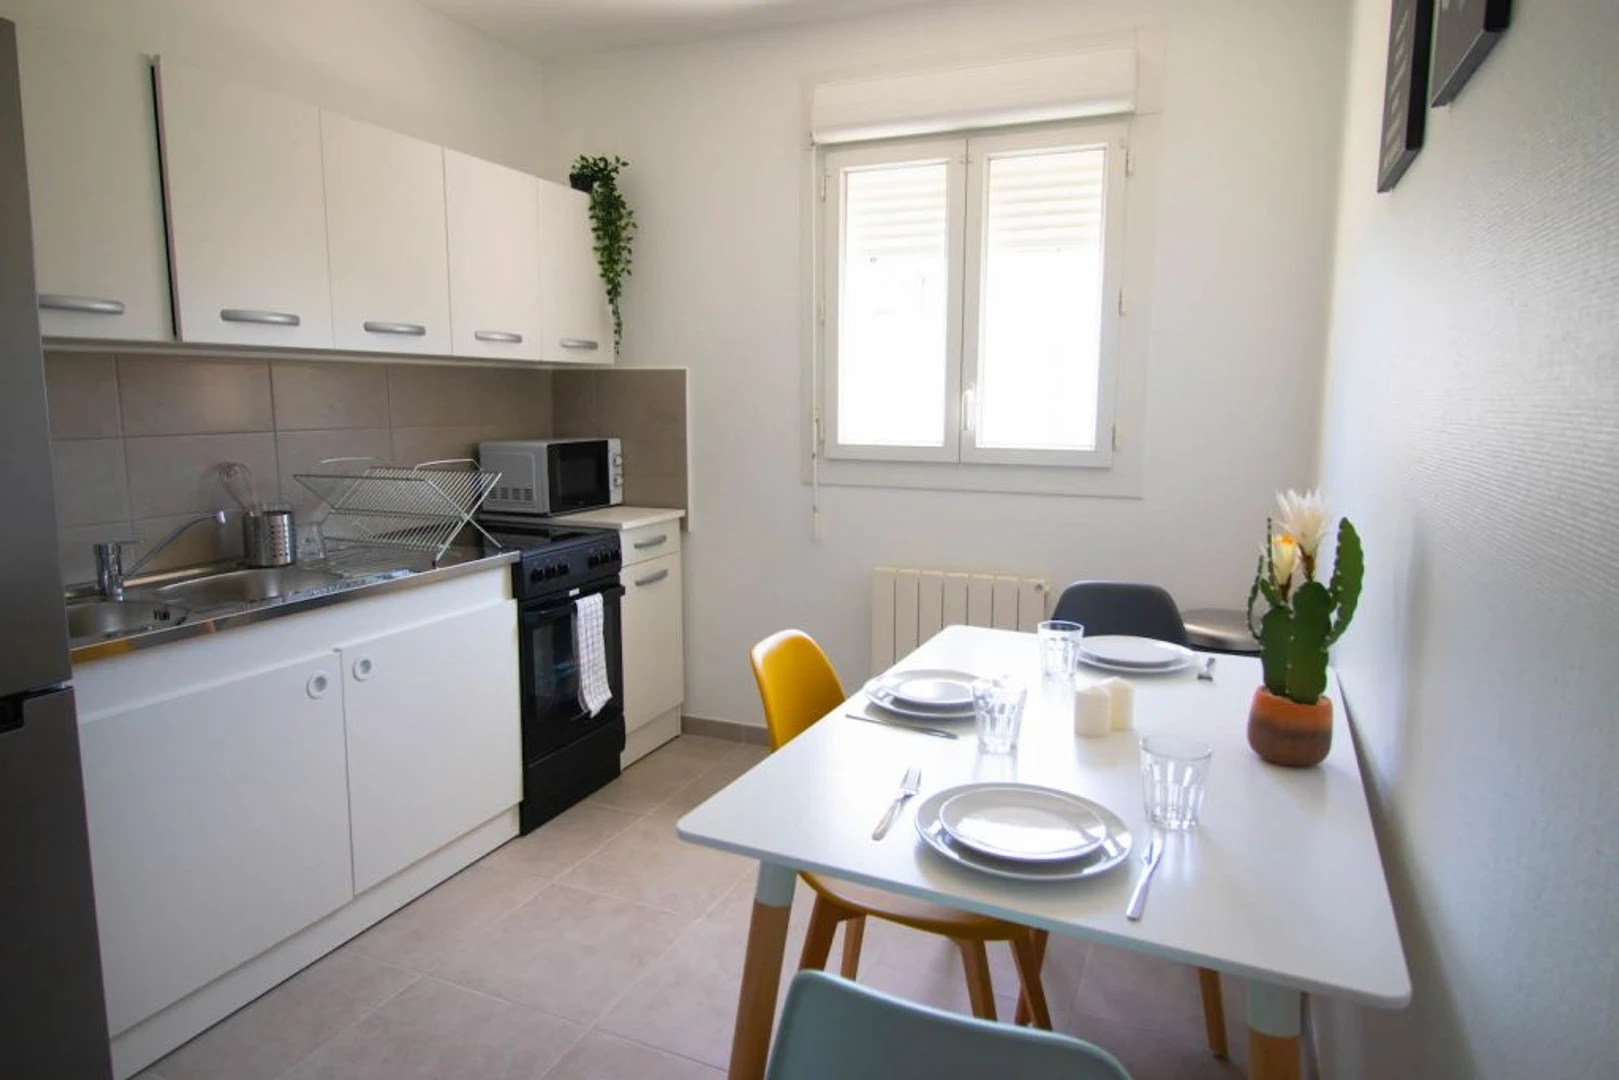 Habitación privada barata en Grenoble